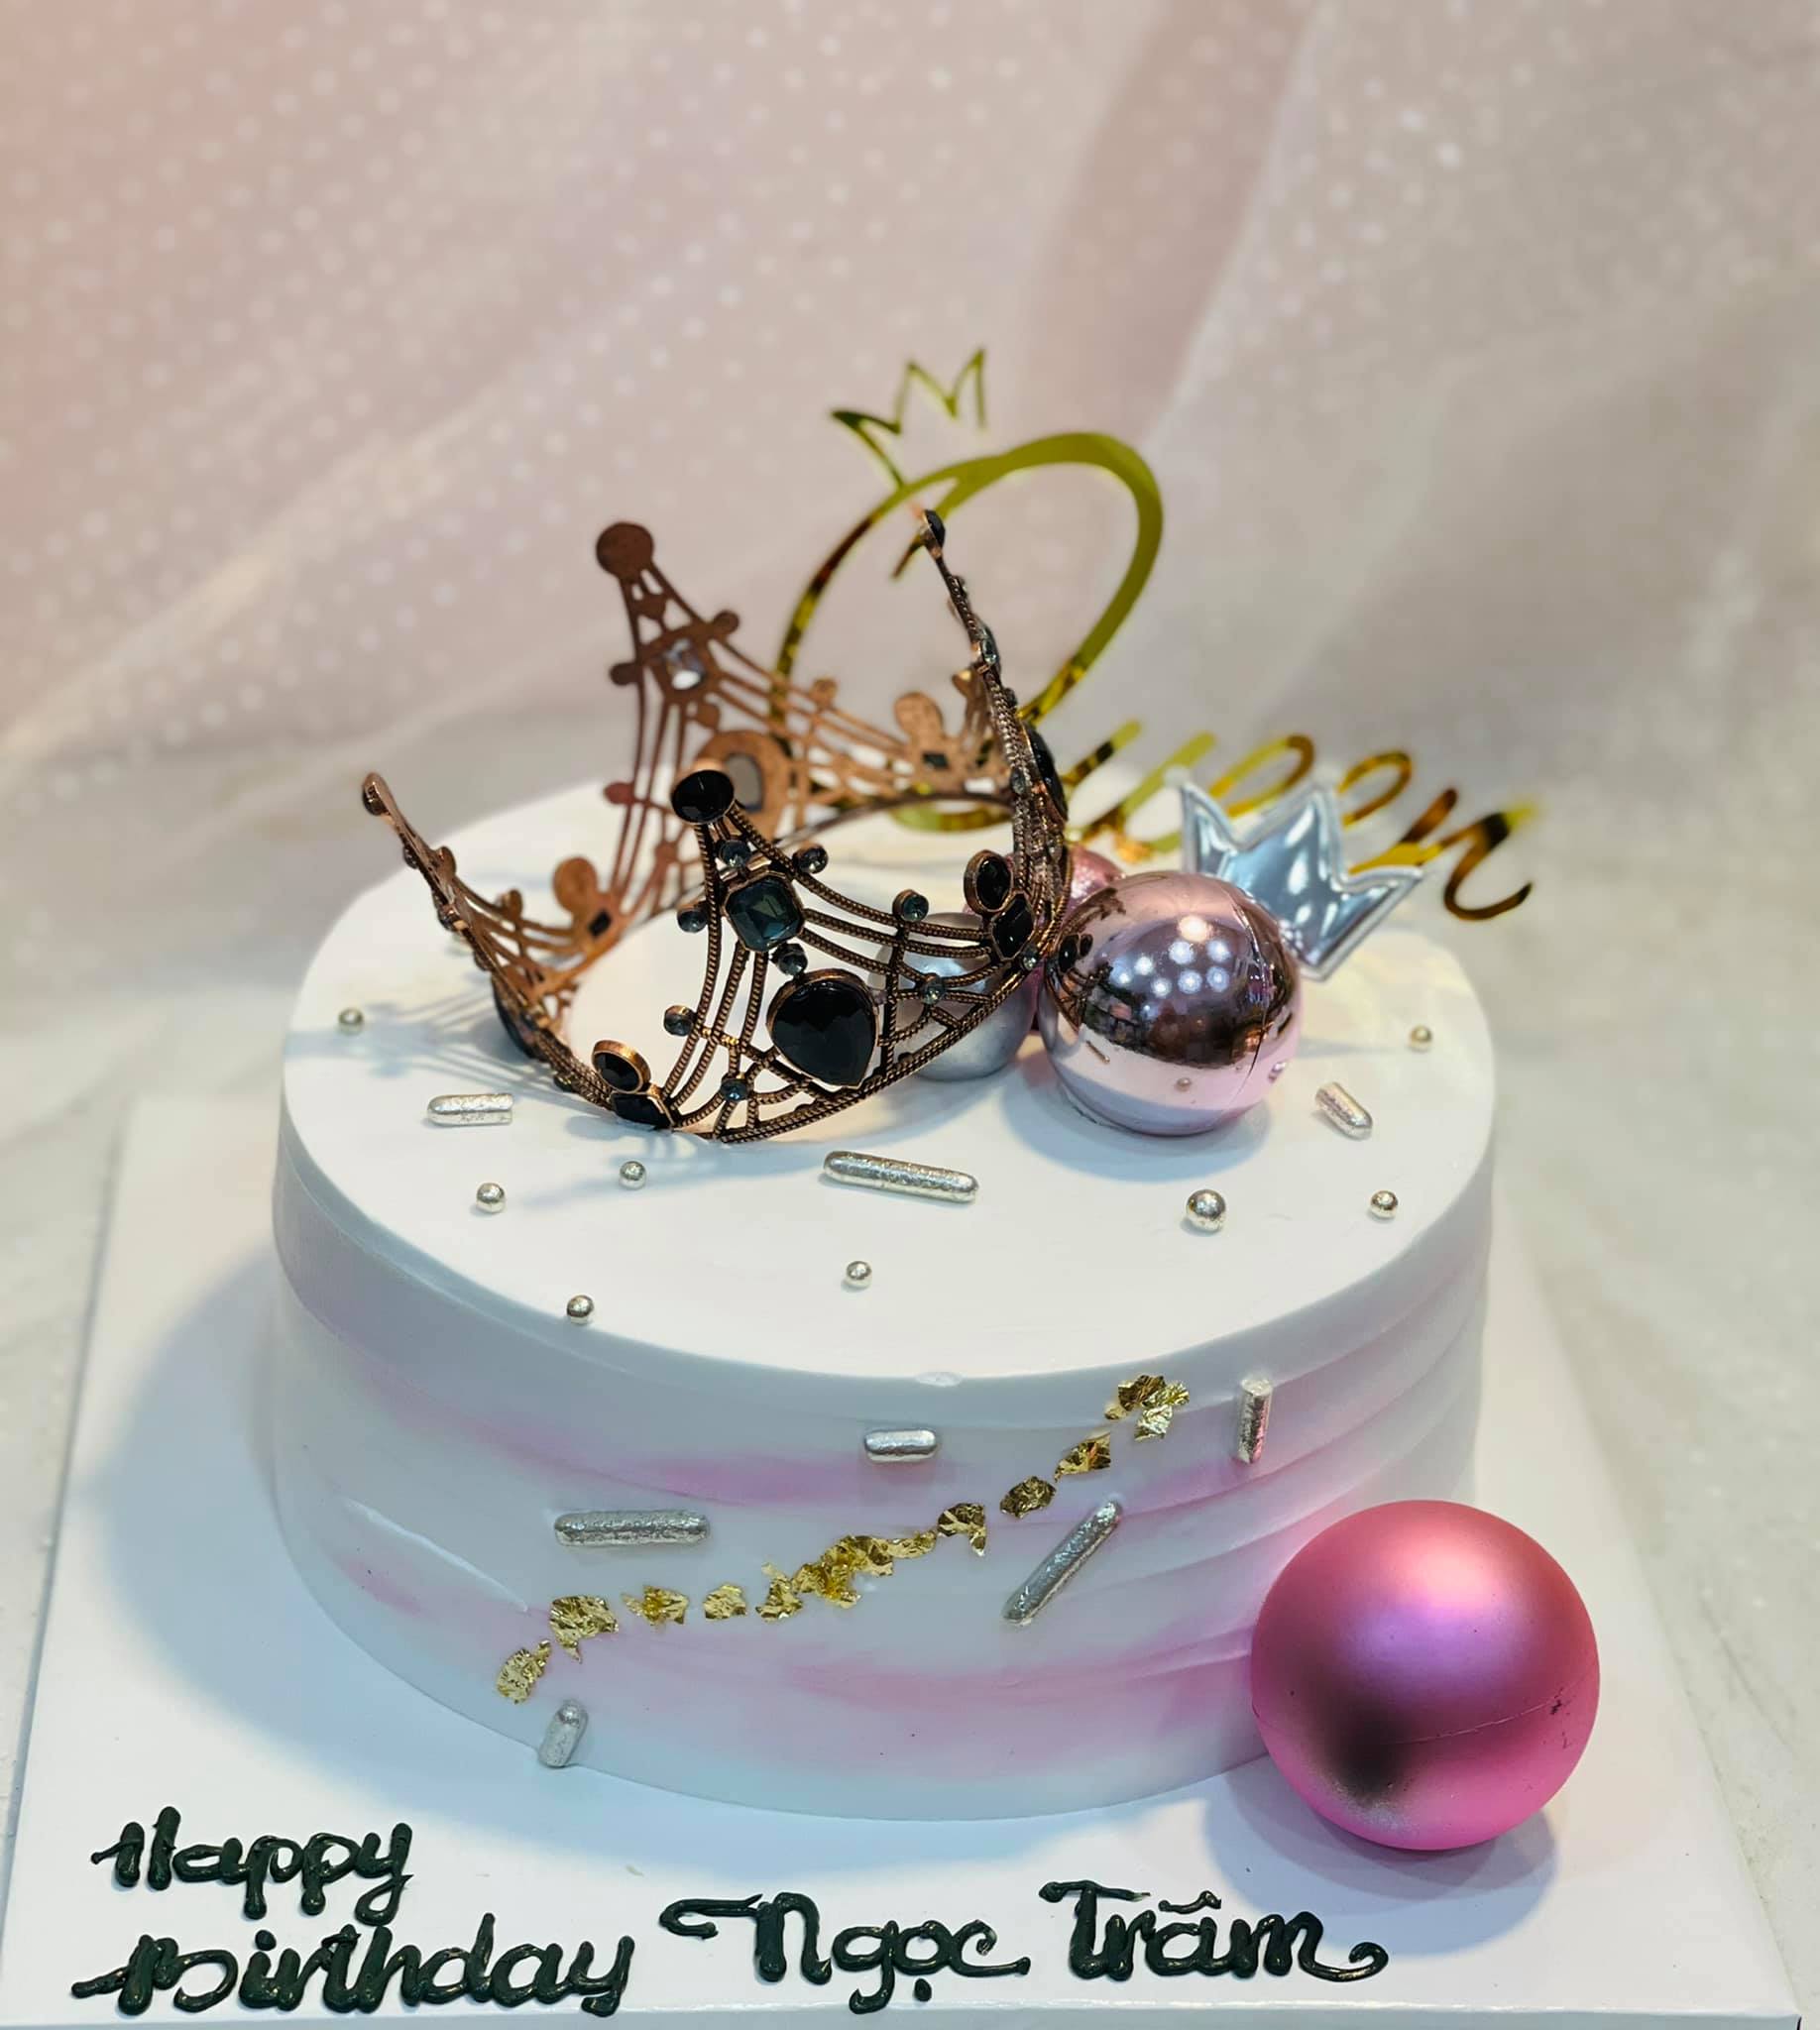 Bánh sinh nhật vương miện - Xem những chiếc bánh sinh nhật hoàn hảo được trang trí bằng hình ảnh của vương miện tuyệt đẹp. Được trang trí tỉ mỉ, những chiếc bánh này chắc chắn sẽ đem lại niềm vui cho bất cứ ai nhìn vào chúng.